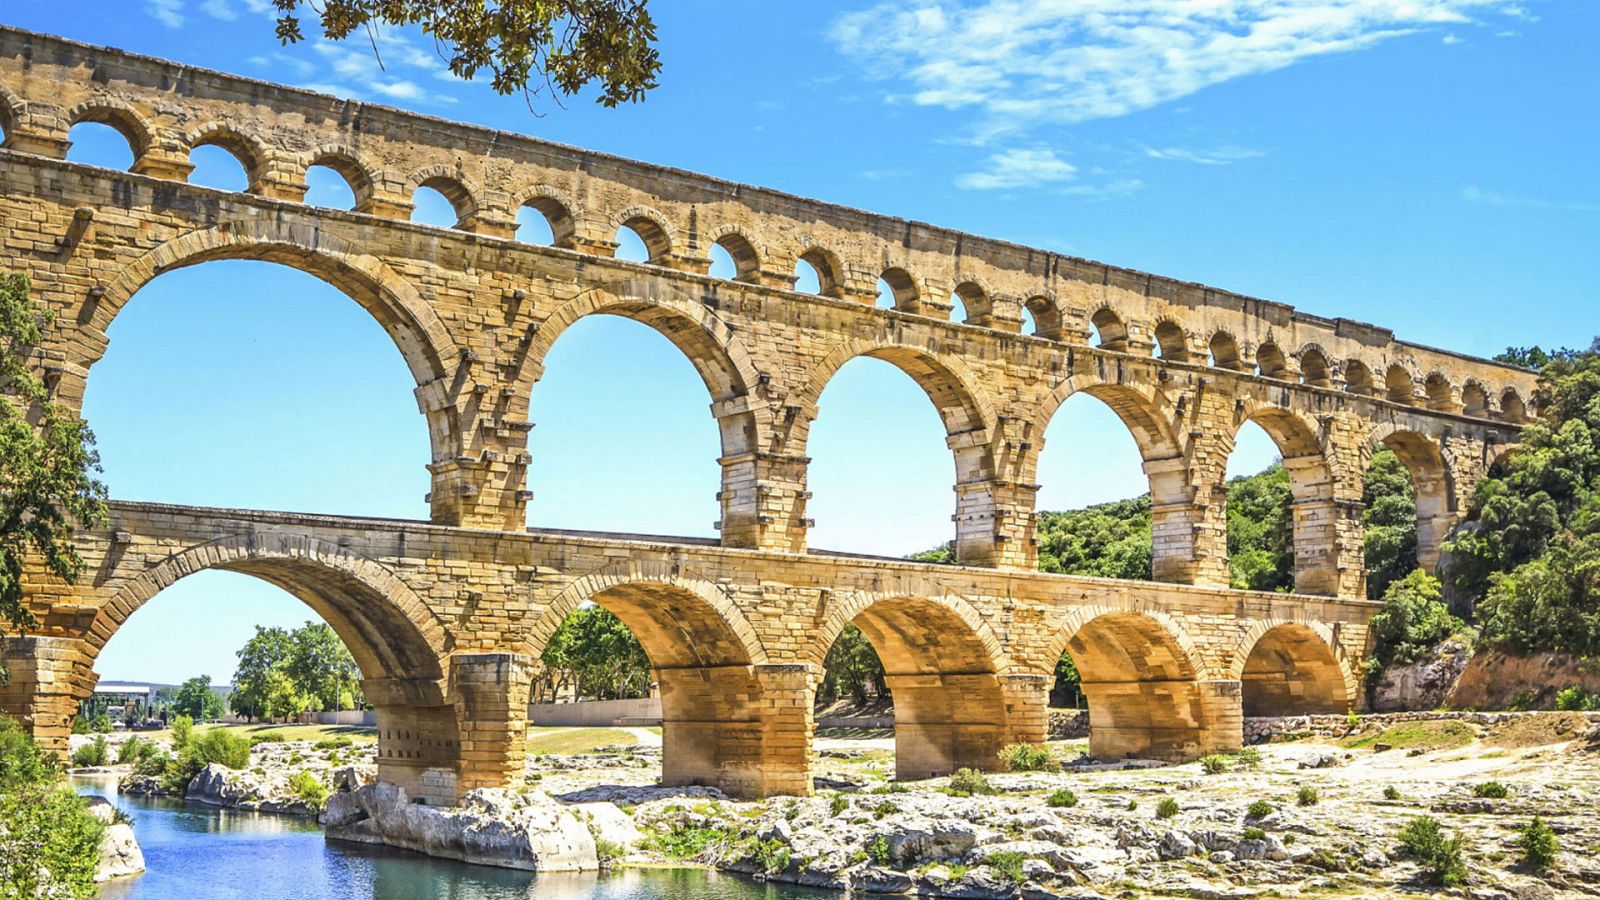 Ingeniería romana - Los acueductos I